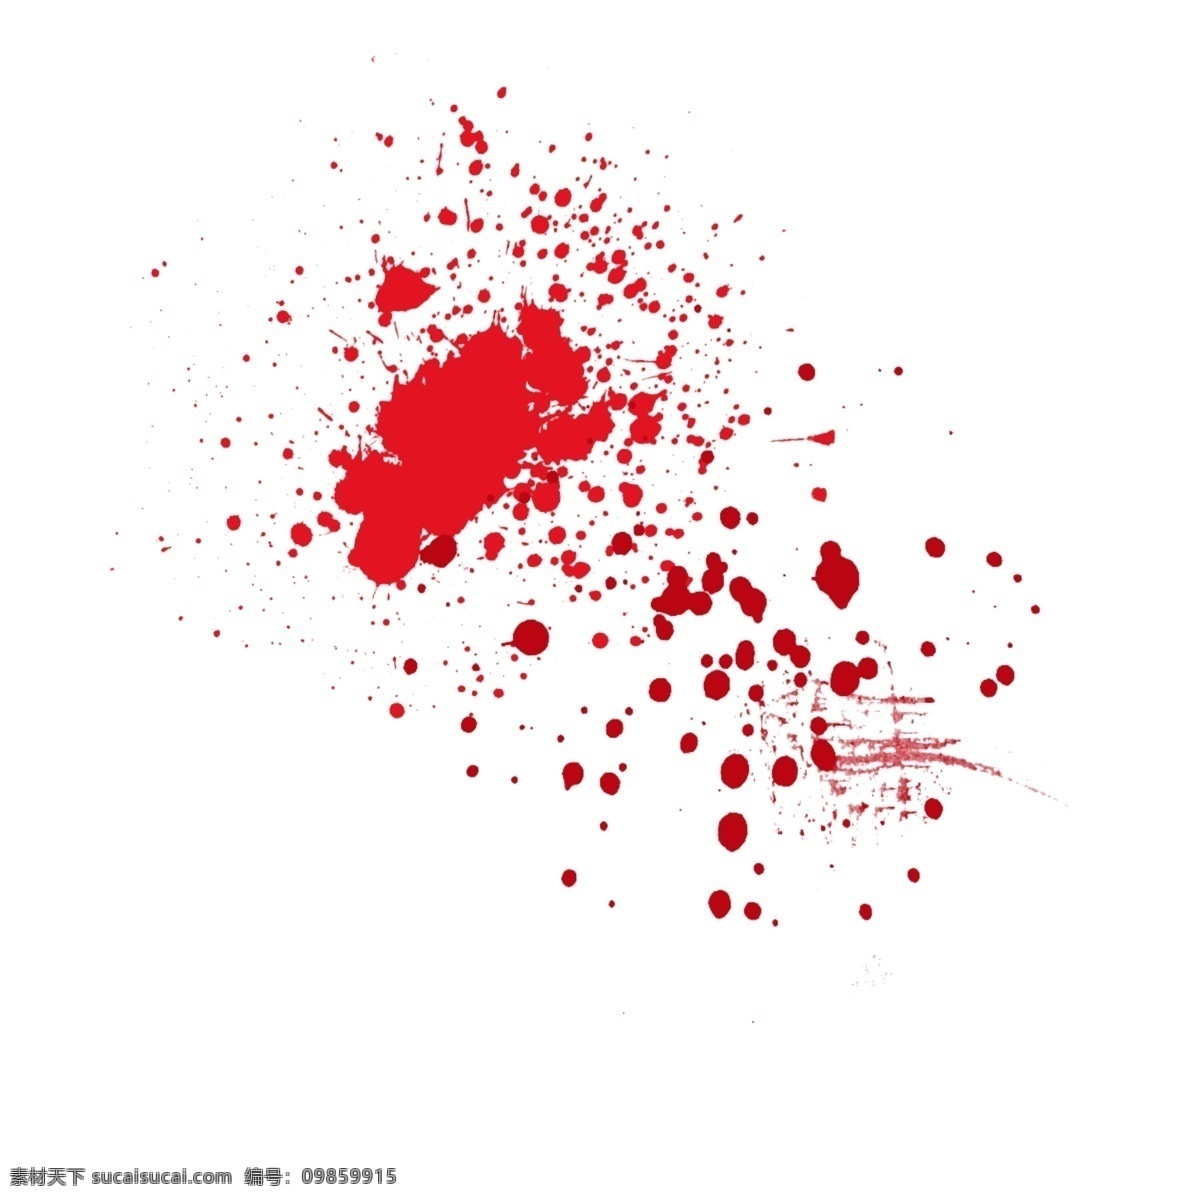 红色 血迹 效果 元素 泼墨 抽象 装饰 血 滴 污渍 载体 血滴 喷溅 血痕 痕迹 笔刷